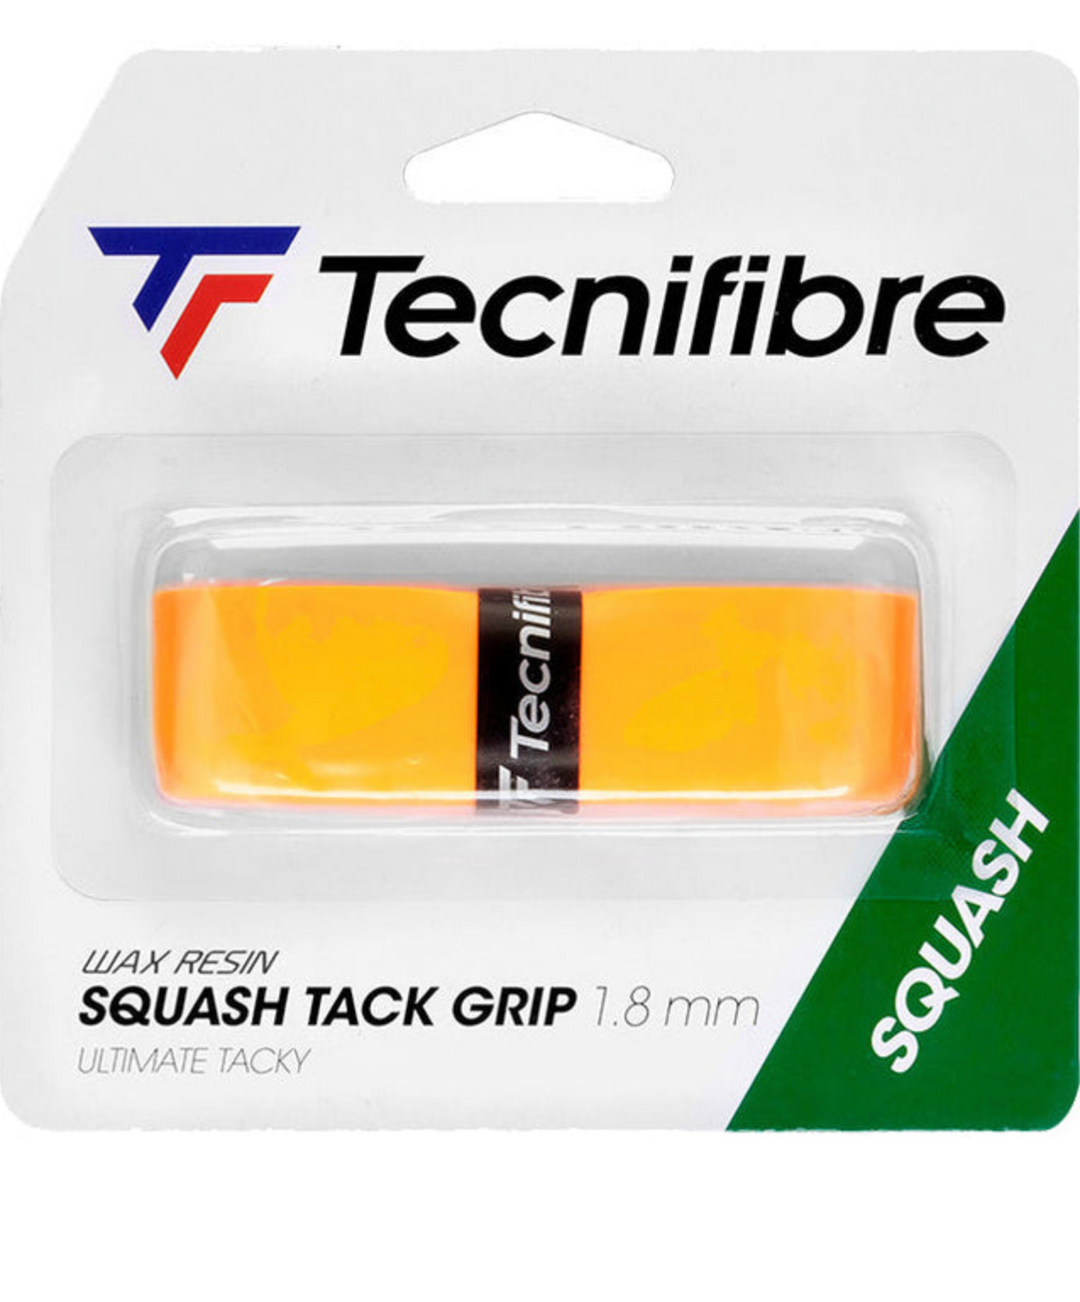 Tecnifibre Squash Tack Replacement Grip